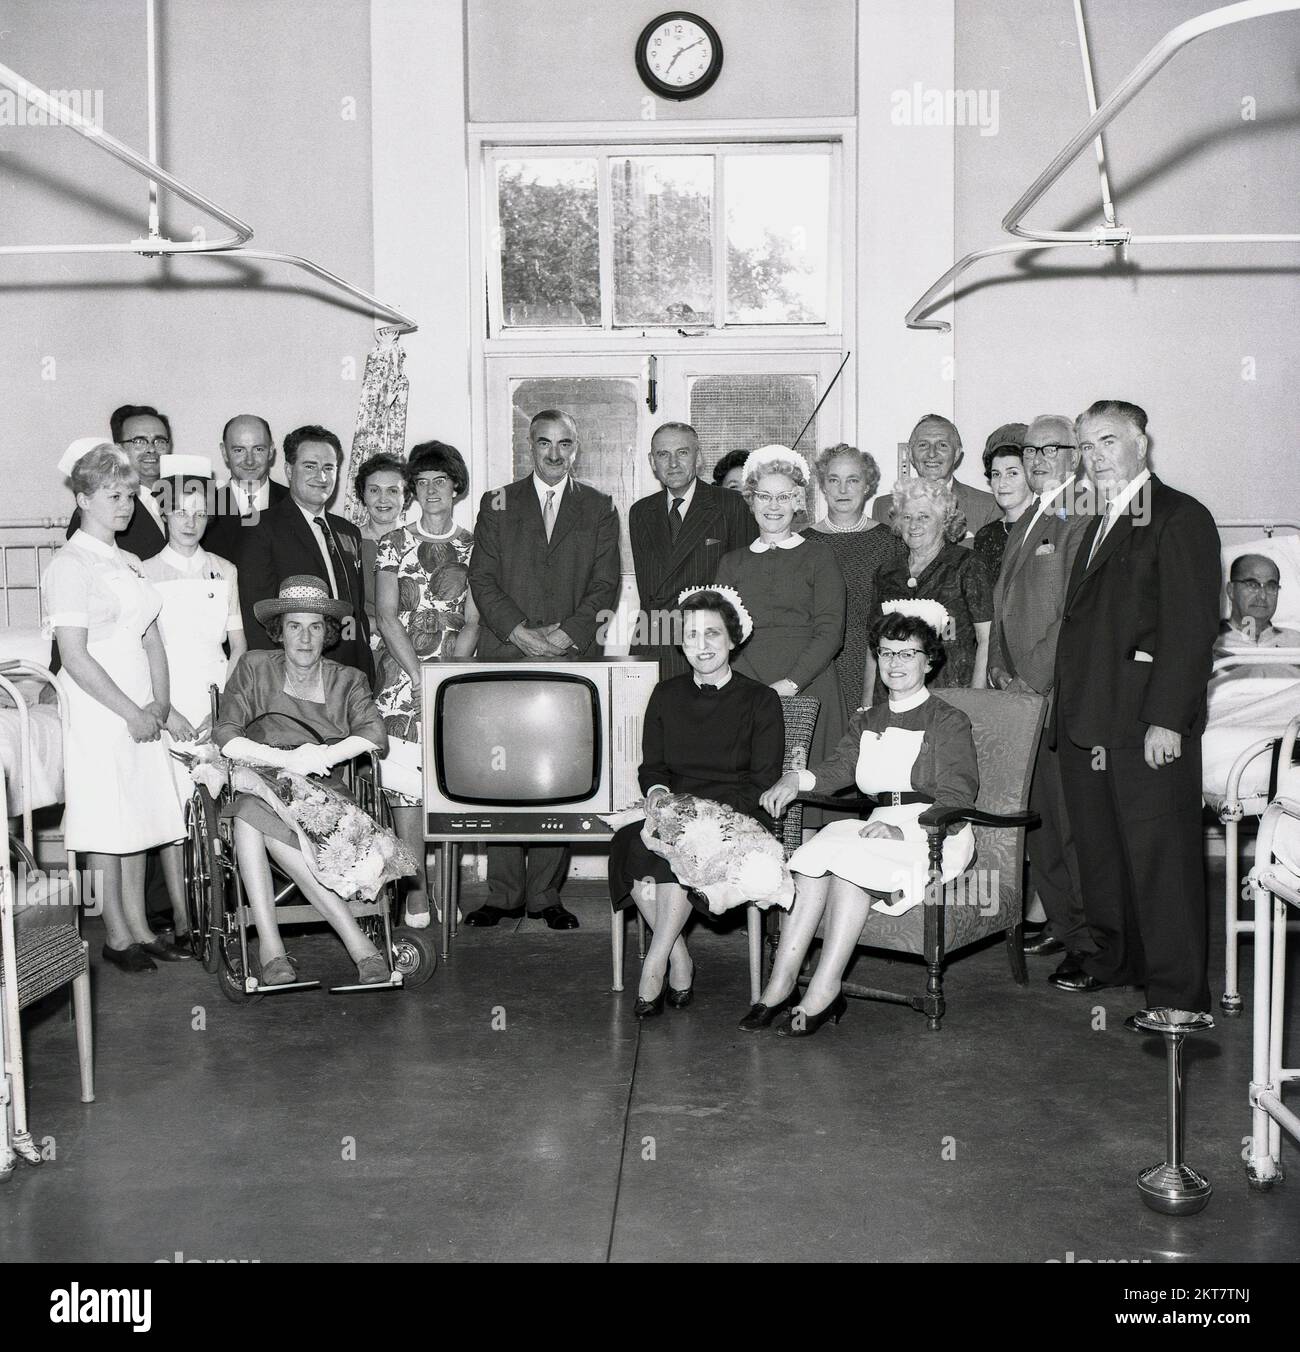 1964, storico, infermieri e personale medico si riuniscono per una foto di gruppo per celebrare un nuovo televisore in arrivo in un reparto ospedaliero, Inghilterra, Regno Unito. Poiché gli apparecchi di televisione erano costosi in questa era, era un evento importante affinchè gli ospedali e le scuole ricevessero uno. Nota un posacenere in acciaio inossidabile può essere visto sulla destra come in quest'epoca, poiché il fumo era ancora allowed in certi momenti in molti reparti ospedalieri. Foto Stock